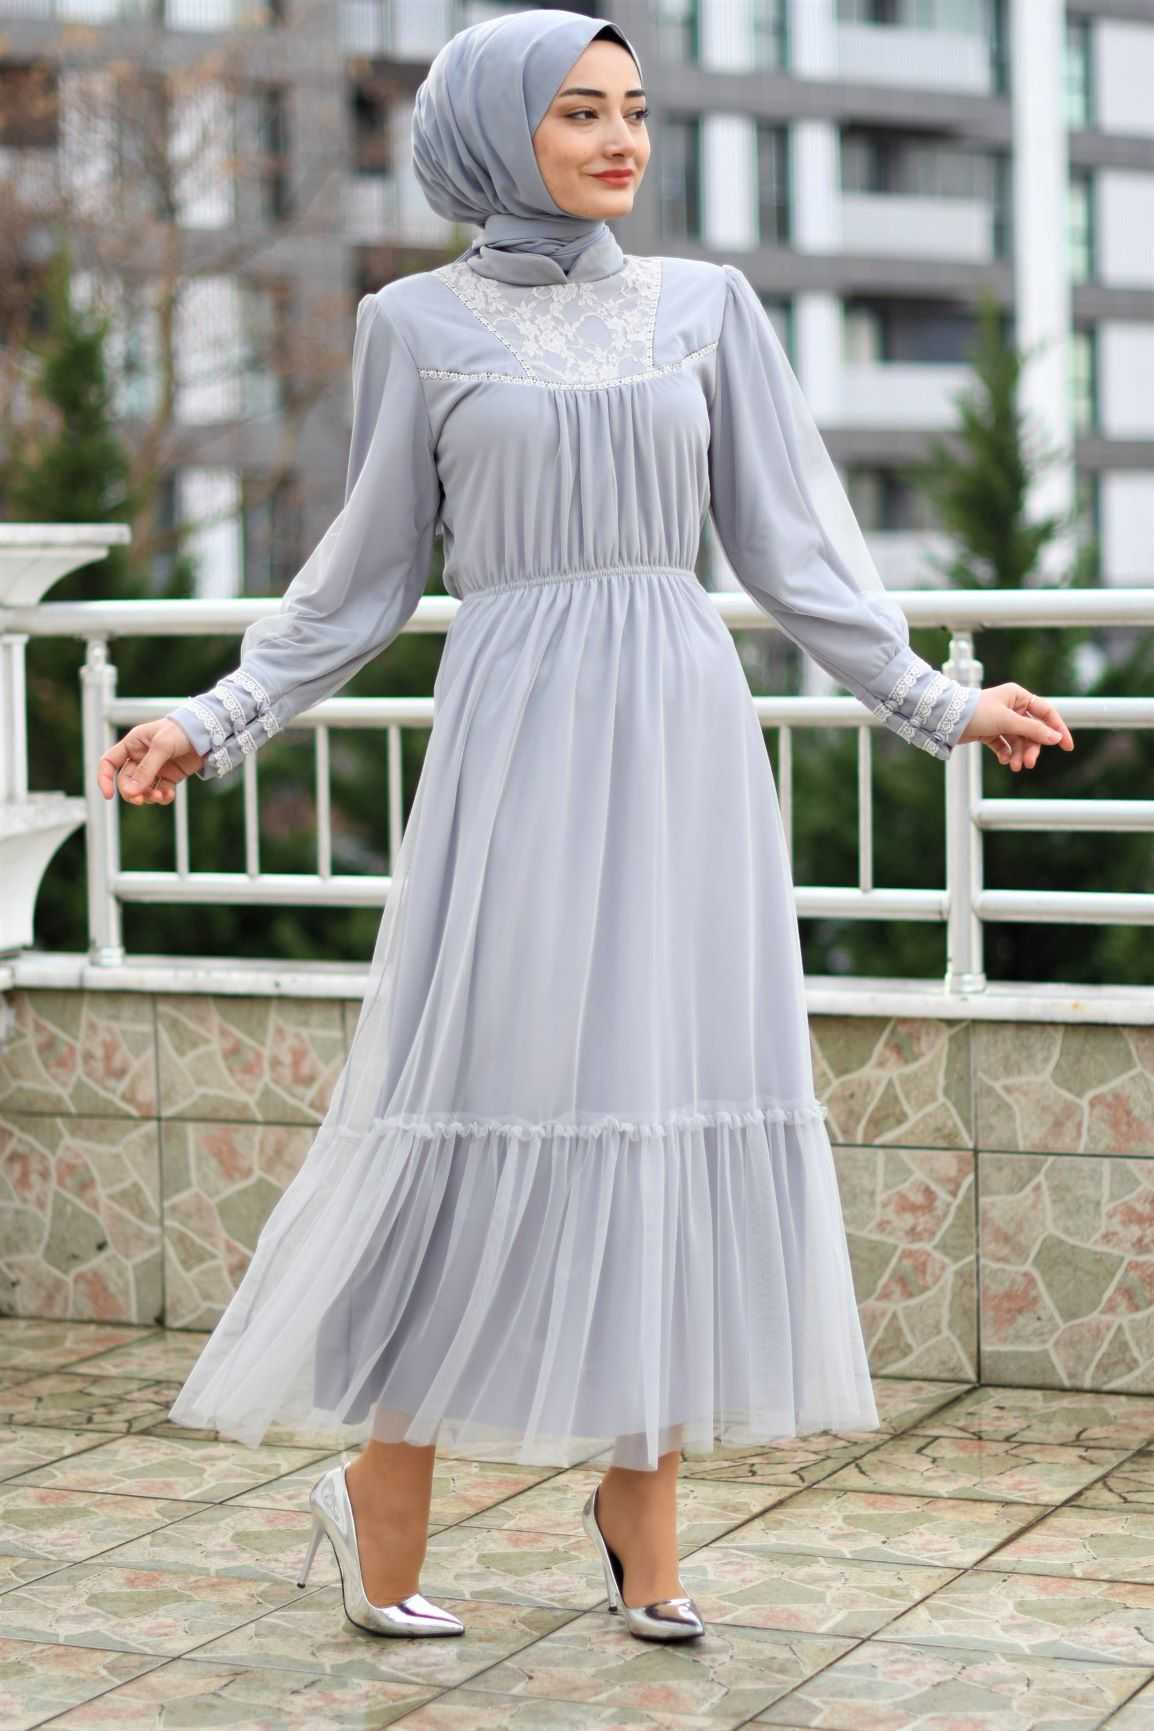 Modam Afra Tesettür Büzgülü Şık Abiye Elbise Modelleri